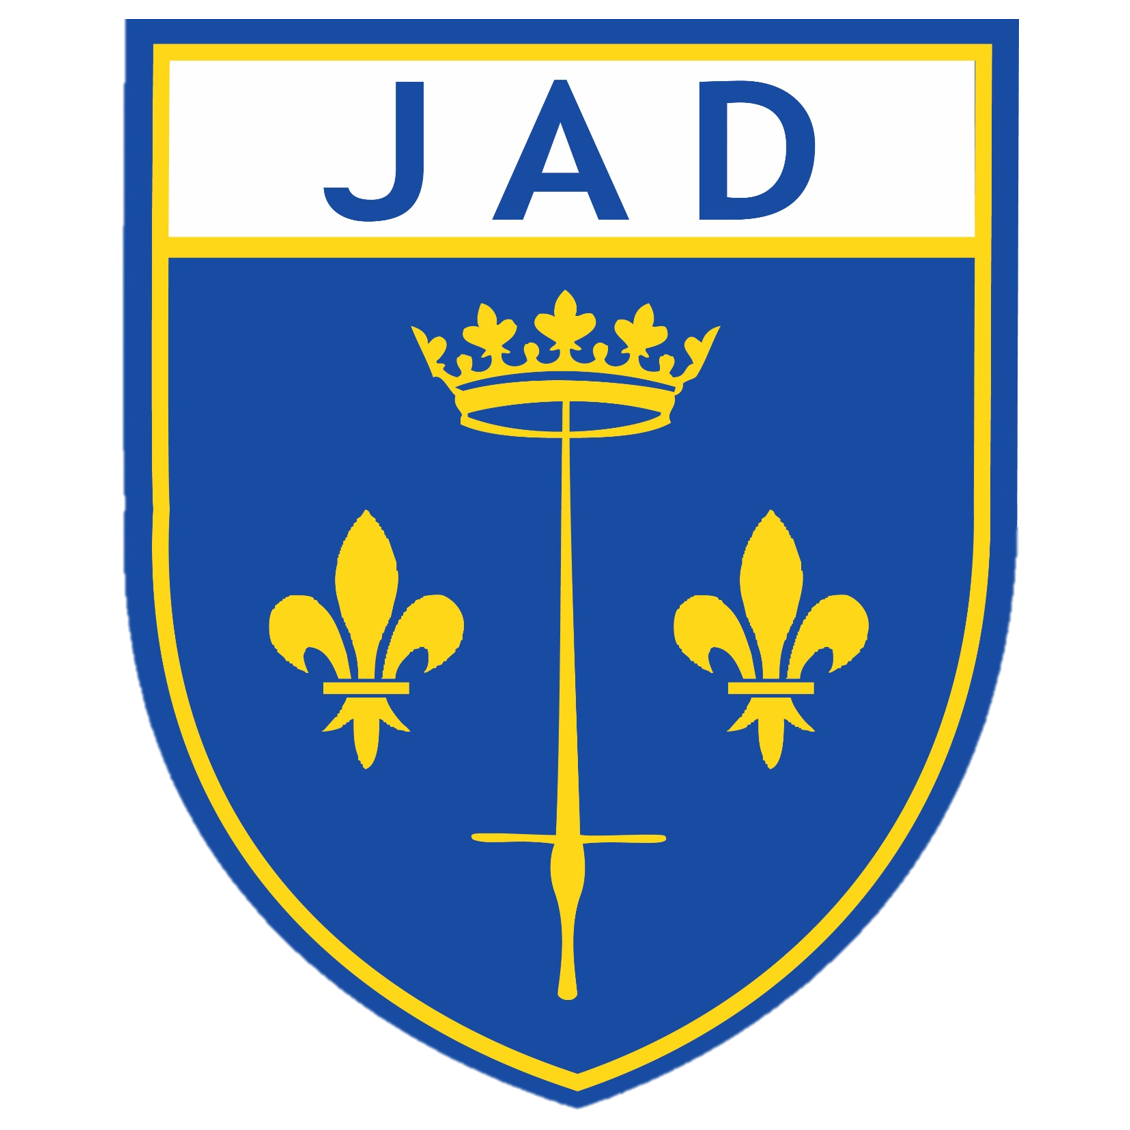 Wappen La Jeanne d'Arc de Dax